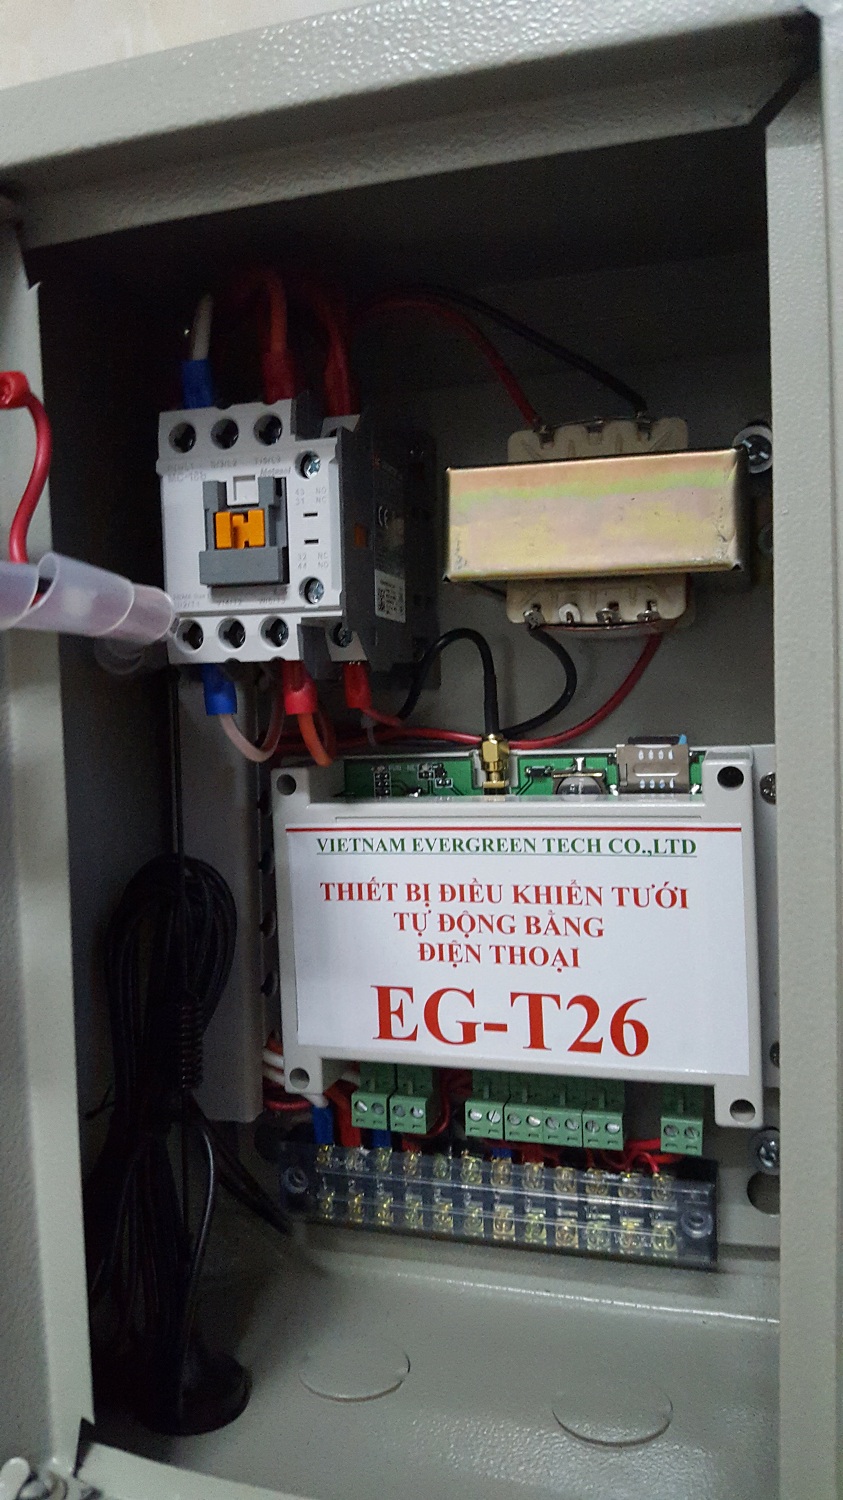 Bộ điều khiển tưới tự động bằng điện thoại EG-T26-4VT